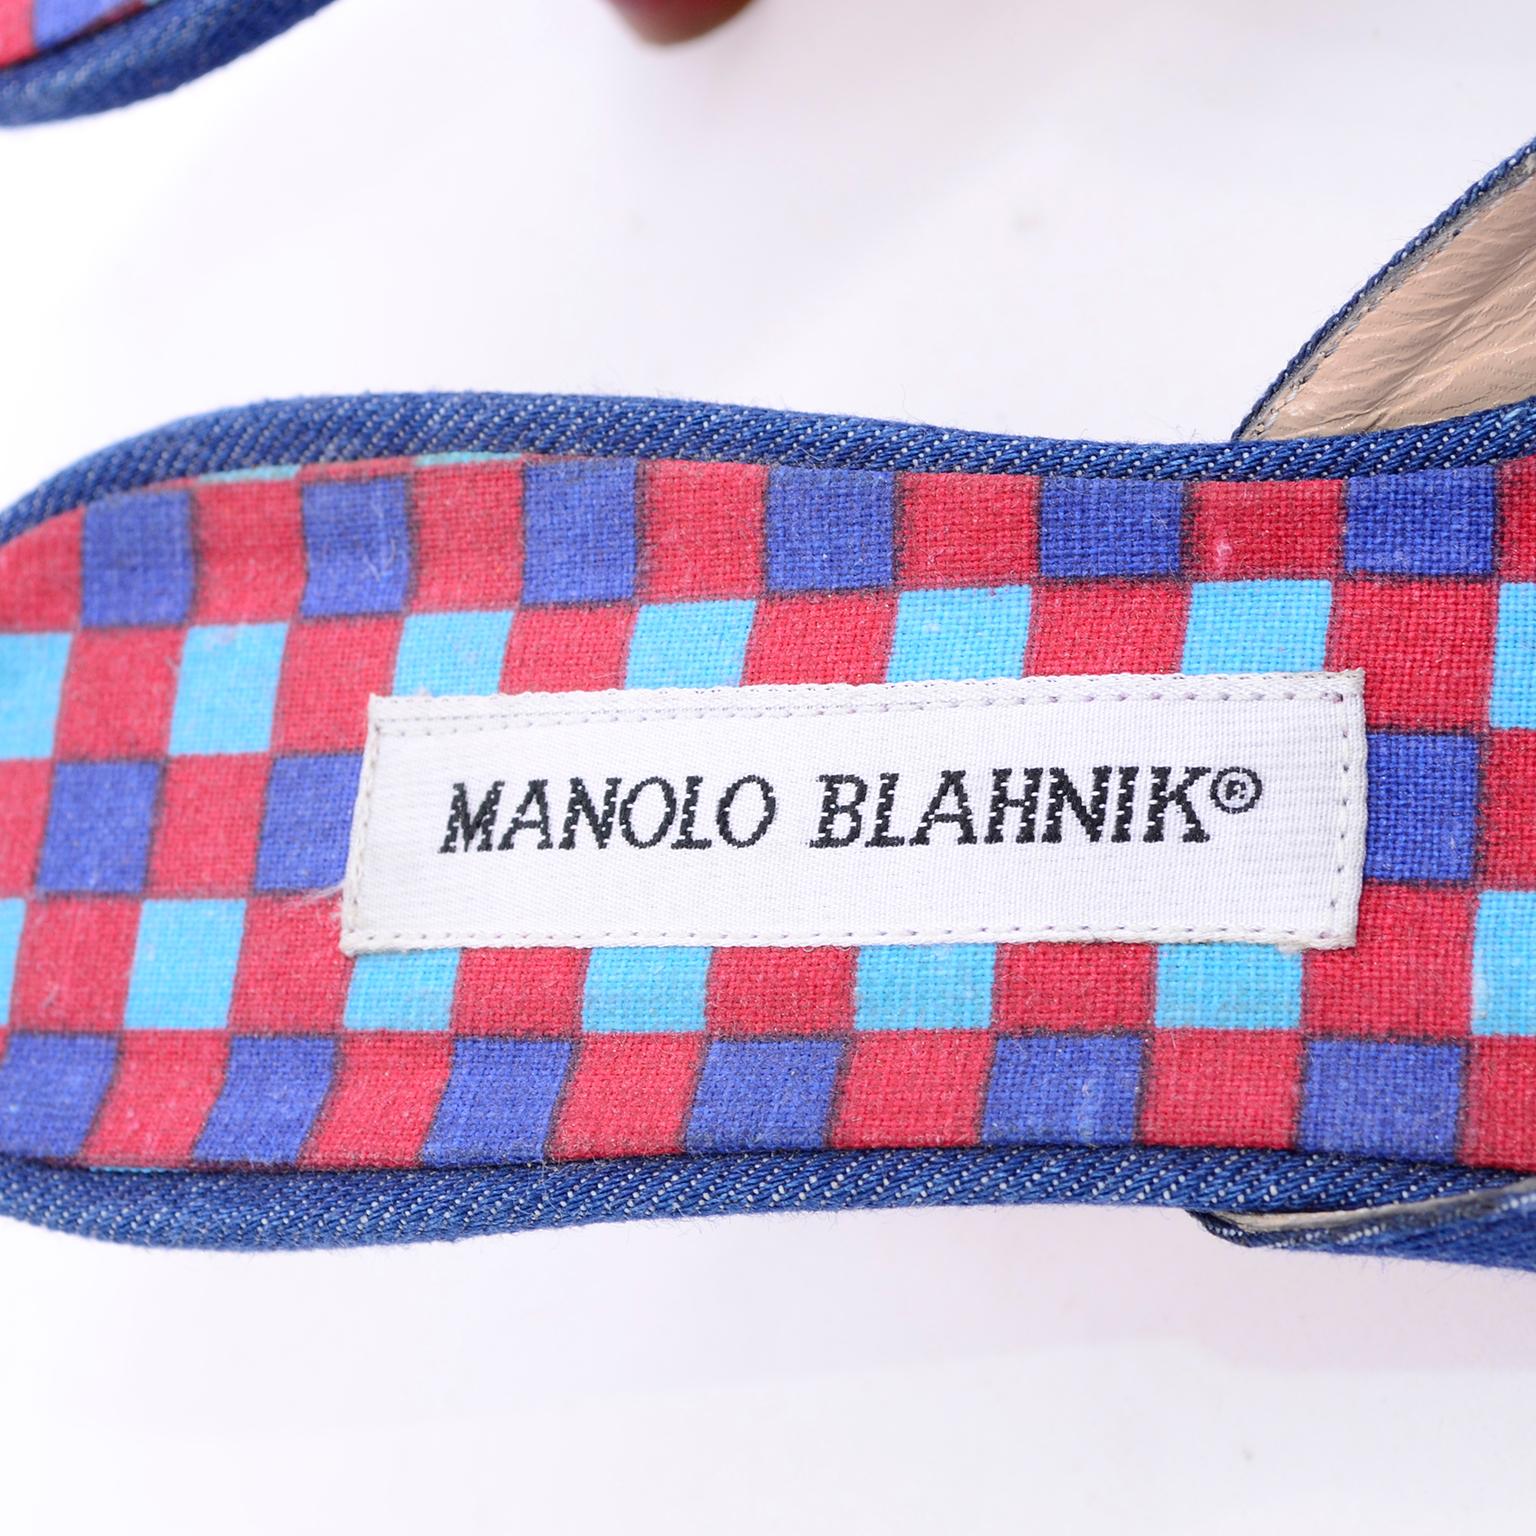 Women's New Unworn Manolo Blahnik Shoes Denim Kitten Heel Mules W/ Red & Blue Beads 38.5